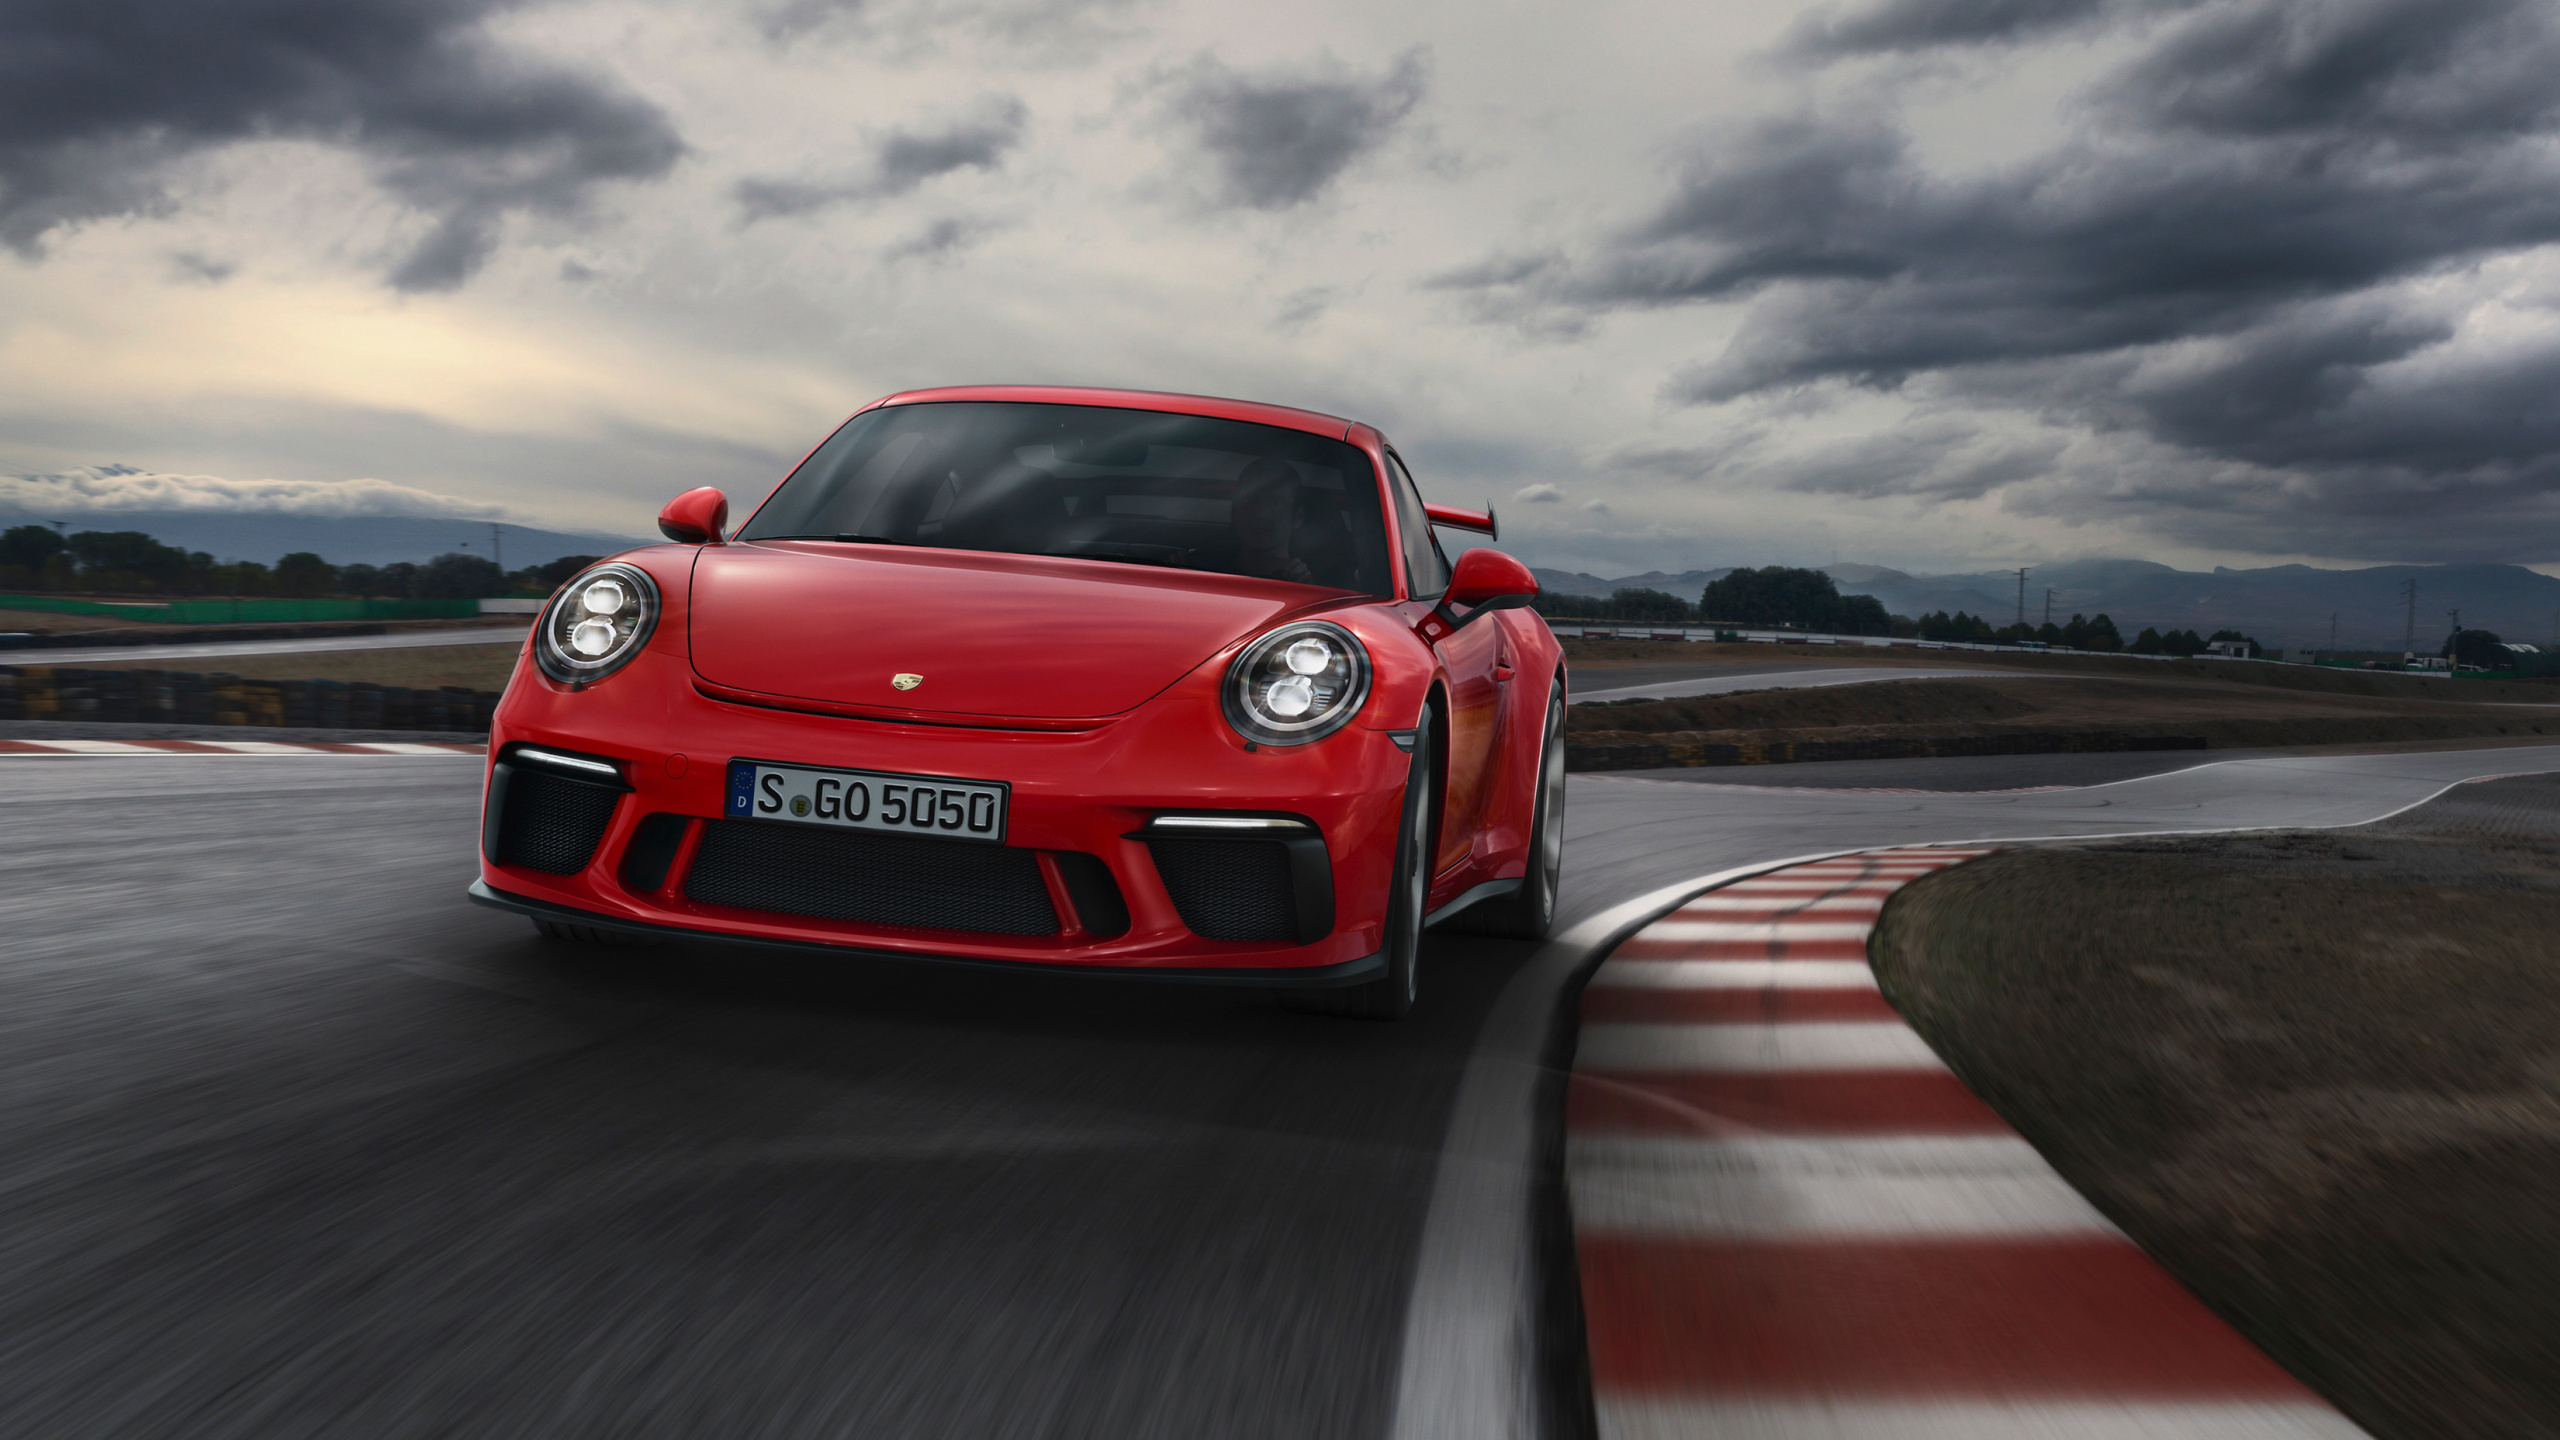 Porsche 911 Rojo en la Carretera Bajo un Cielo Nublado. Wallpaper in 2560x1440 Resolution